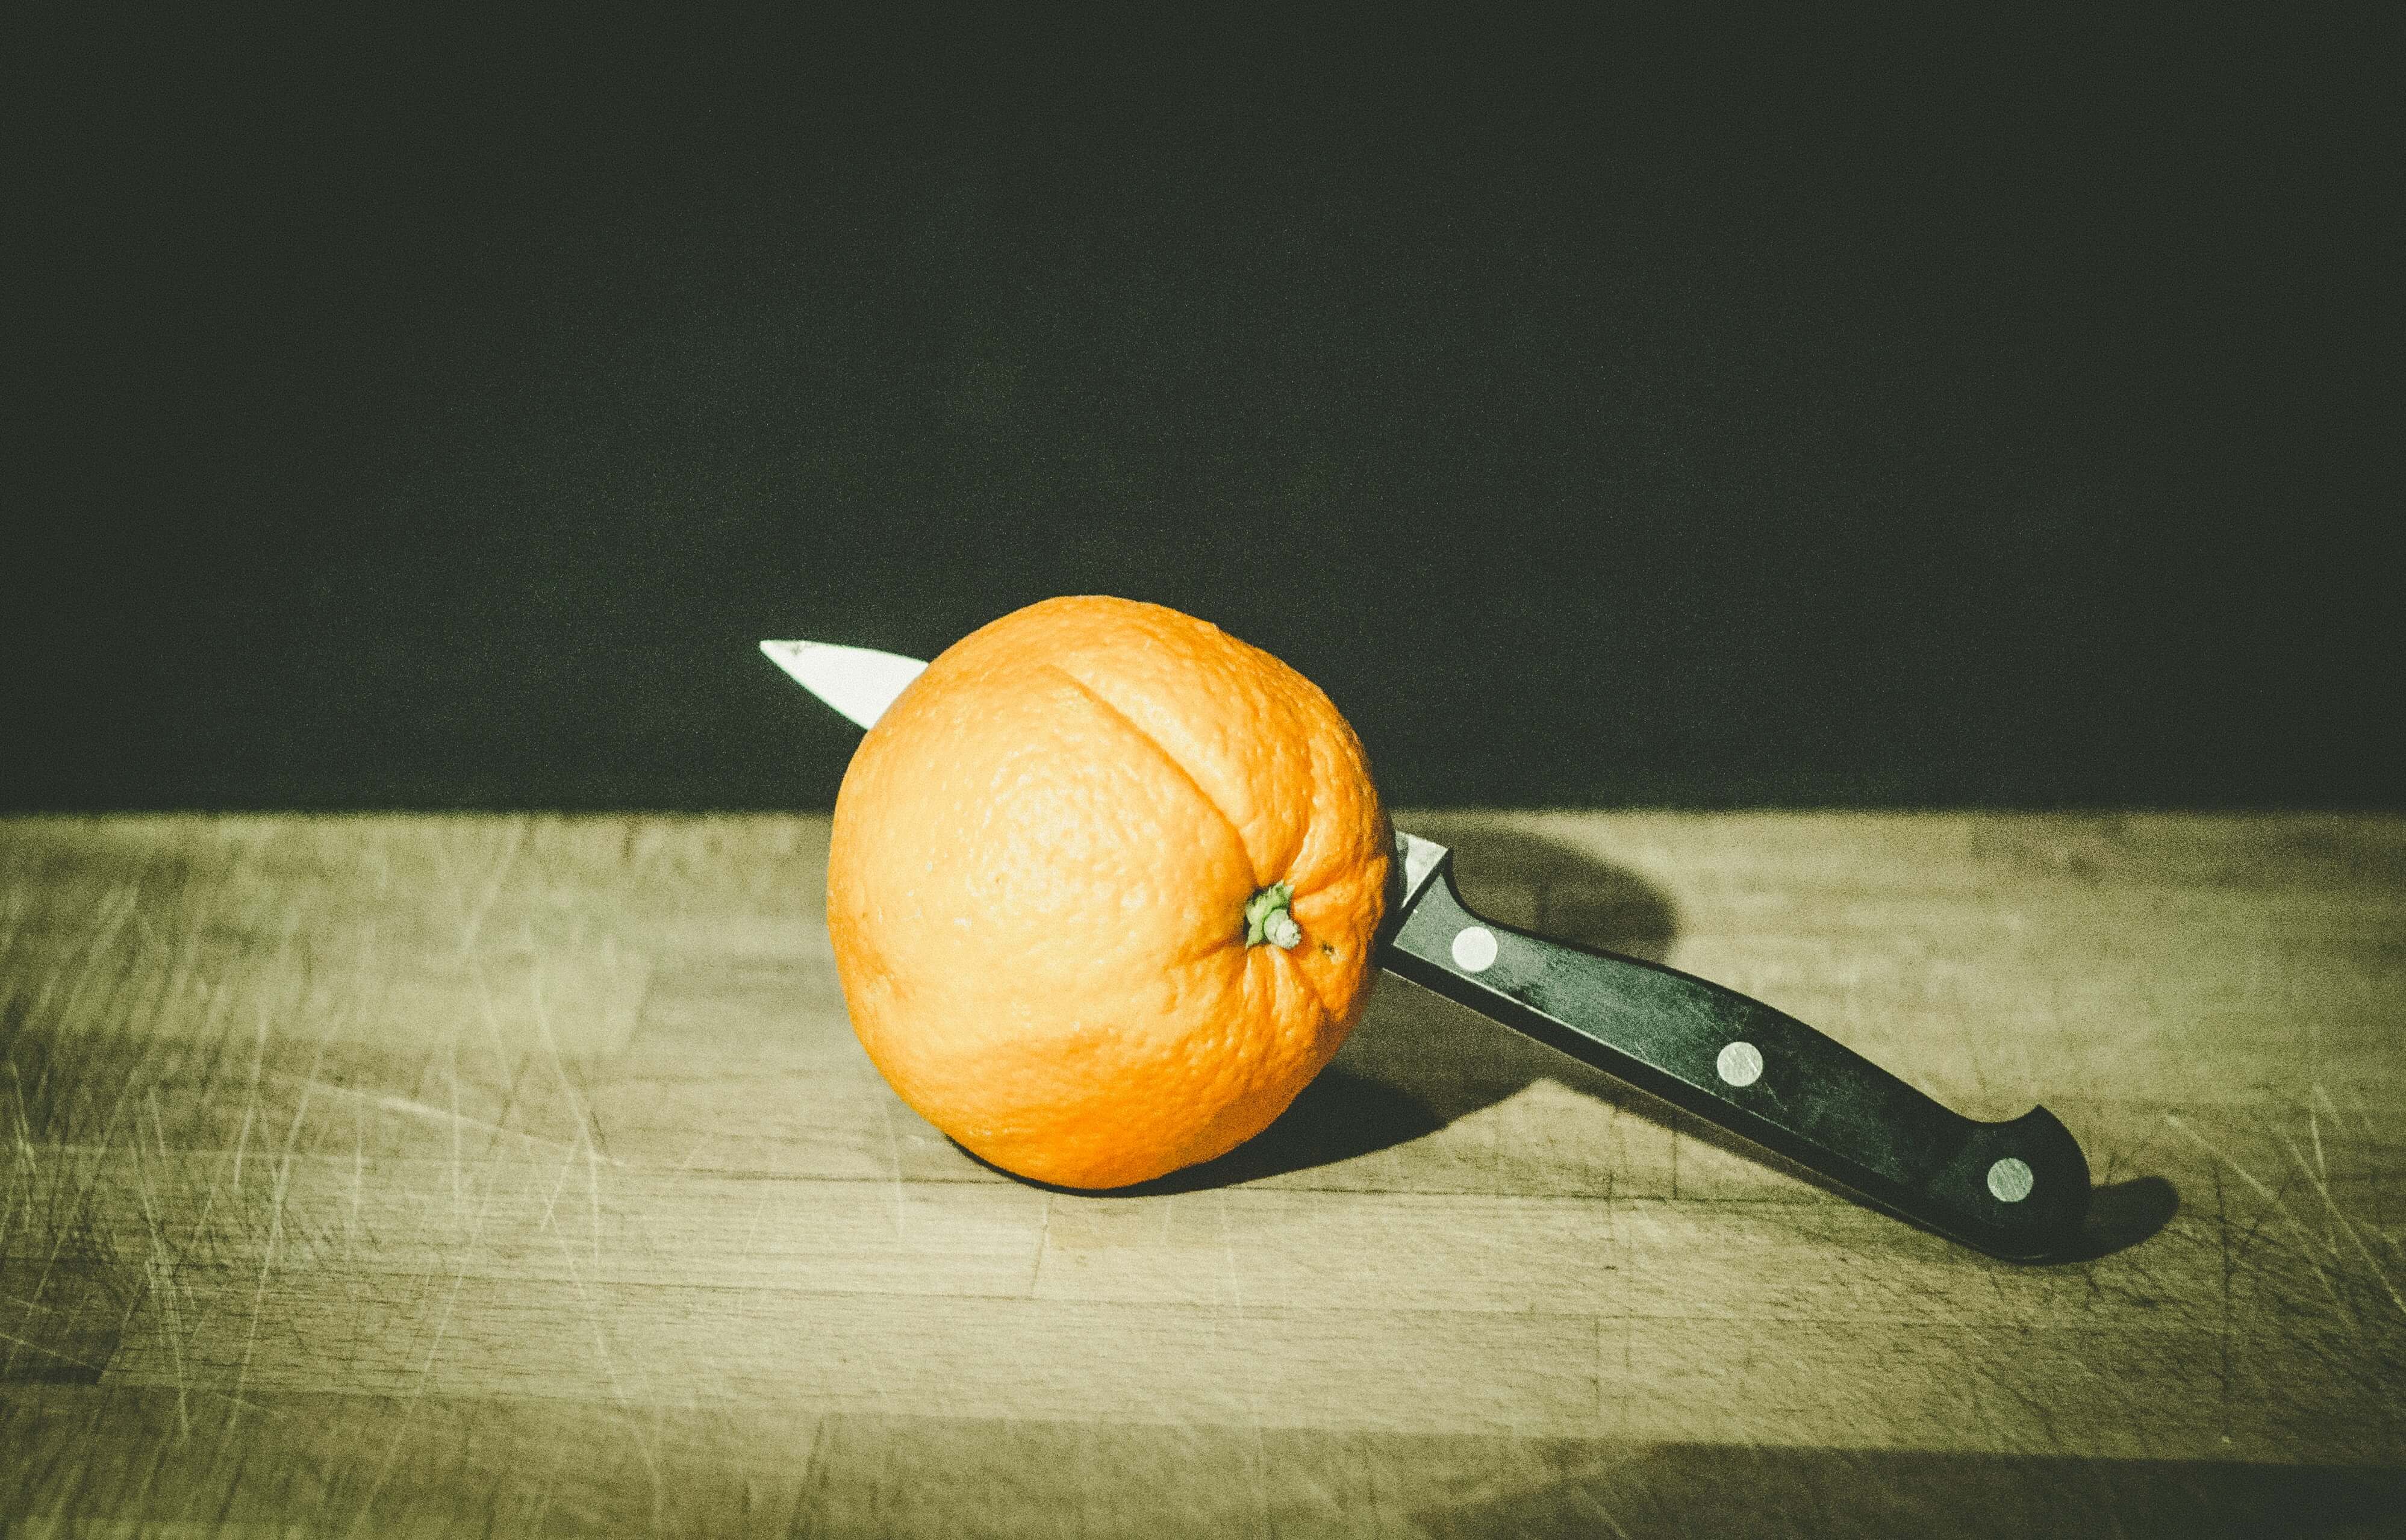 Ein Messer steckt teilweise in einer Orange, die auf einer Holzoberfläche vor einem dunklen Hintergrund liegt.